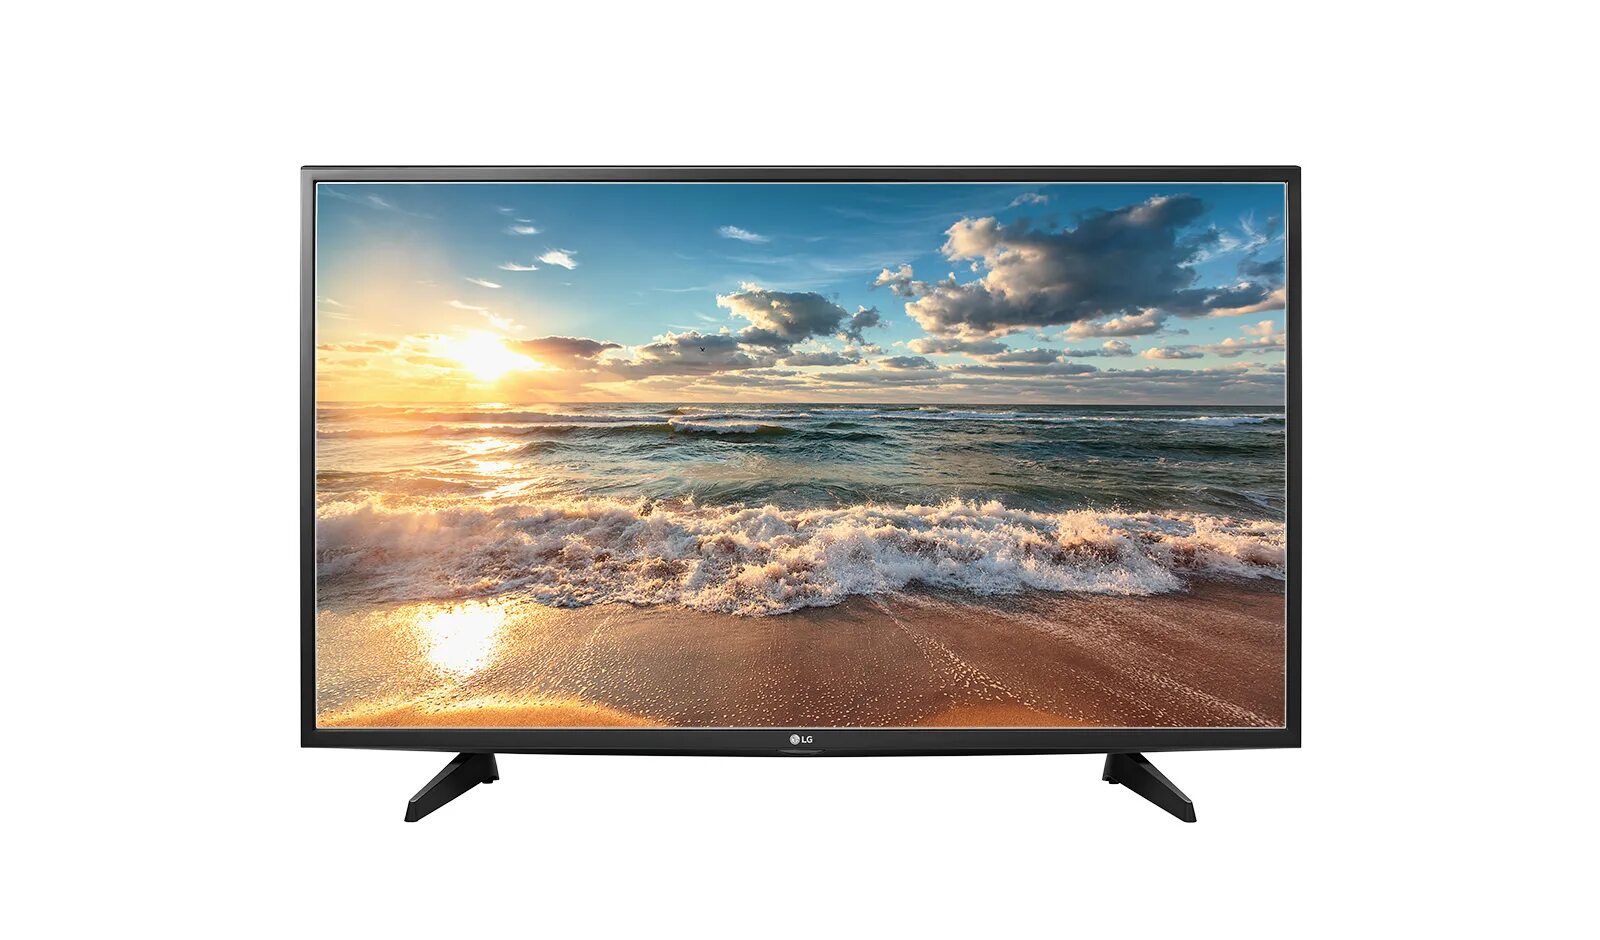 Акции телевизор 32 дюйма купить. LG 32lj500v. LG 43lj500v. Телевизор LG 32lj510u. LG 32lj500v 2017 led.